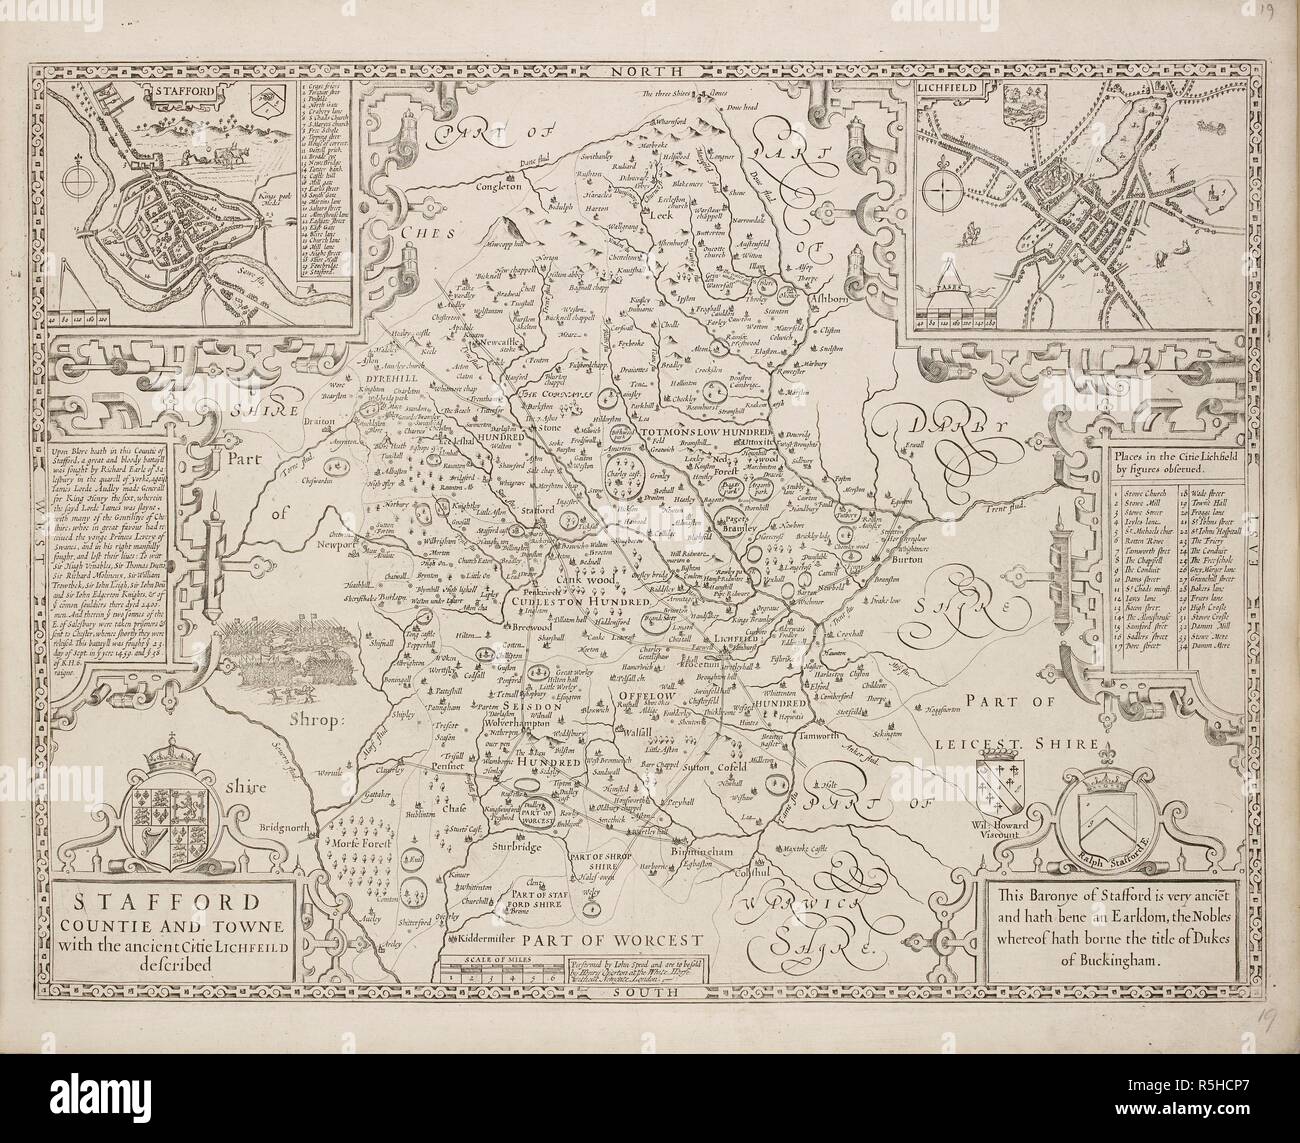 Un mapa de la ciudad y del condado de Stafford. Staffordshire. . Una colección de 37 mapas de los condados de Inglaterra. Londres. H. Overton, 1714. Una colección de 37 mapas de los condados de Inglaterra, siendo las reimpresiones, de J. Speedâ€™s mapas, por Henry Overton, junto con los de P. Stent Reimpreso por John Overton, y mapas de Derbyshire y Yorkshire grabado por S. Nicholls. Fuente: Maps.145.c.9 19. Idioma: Inglés. Foto de stock